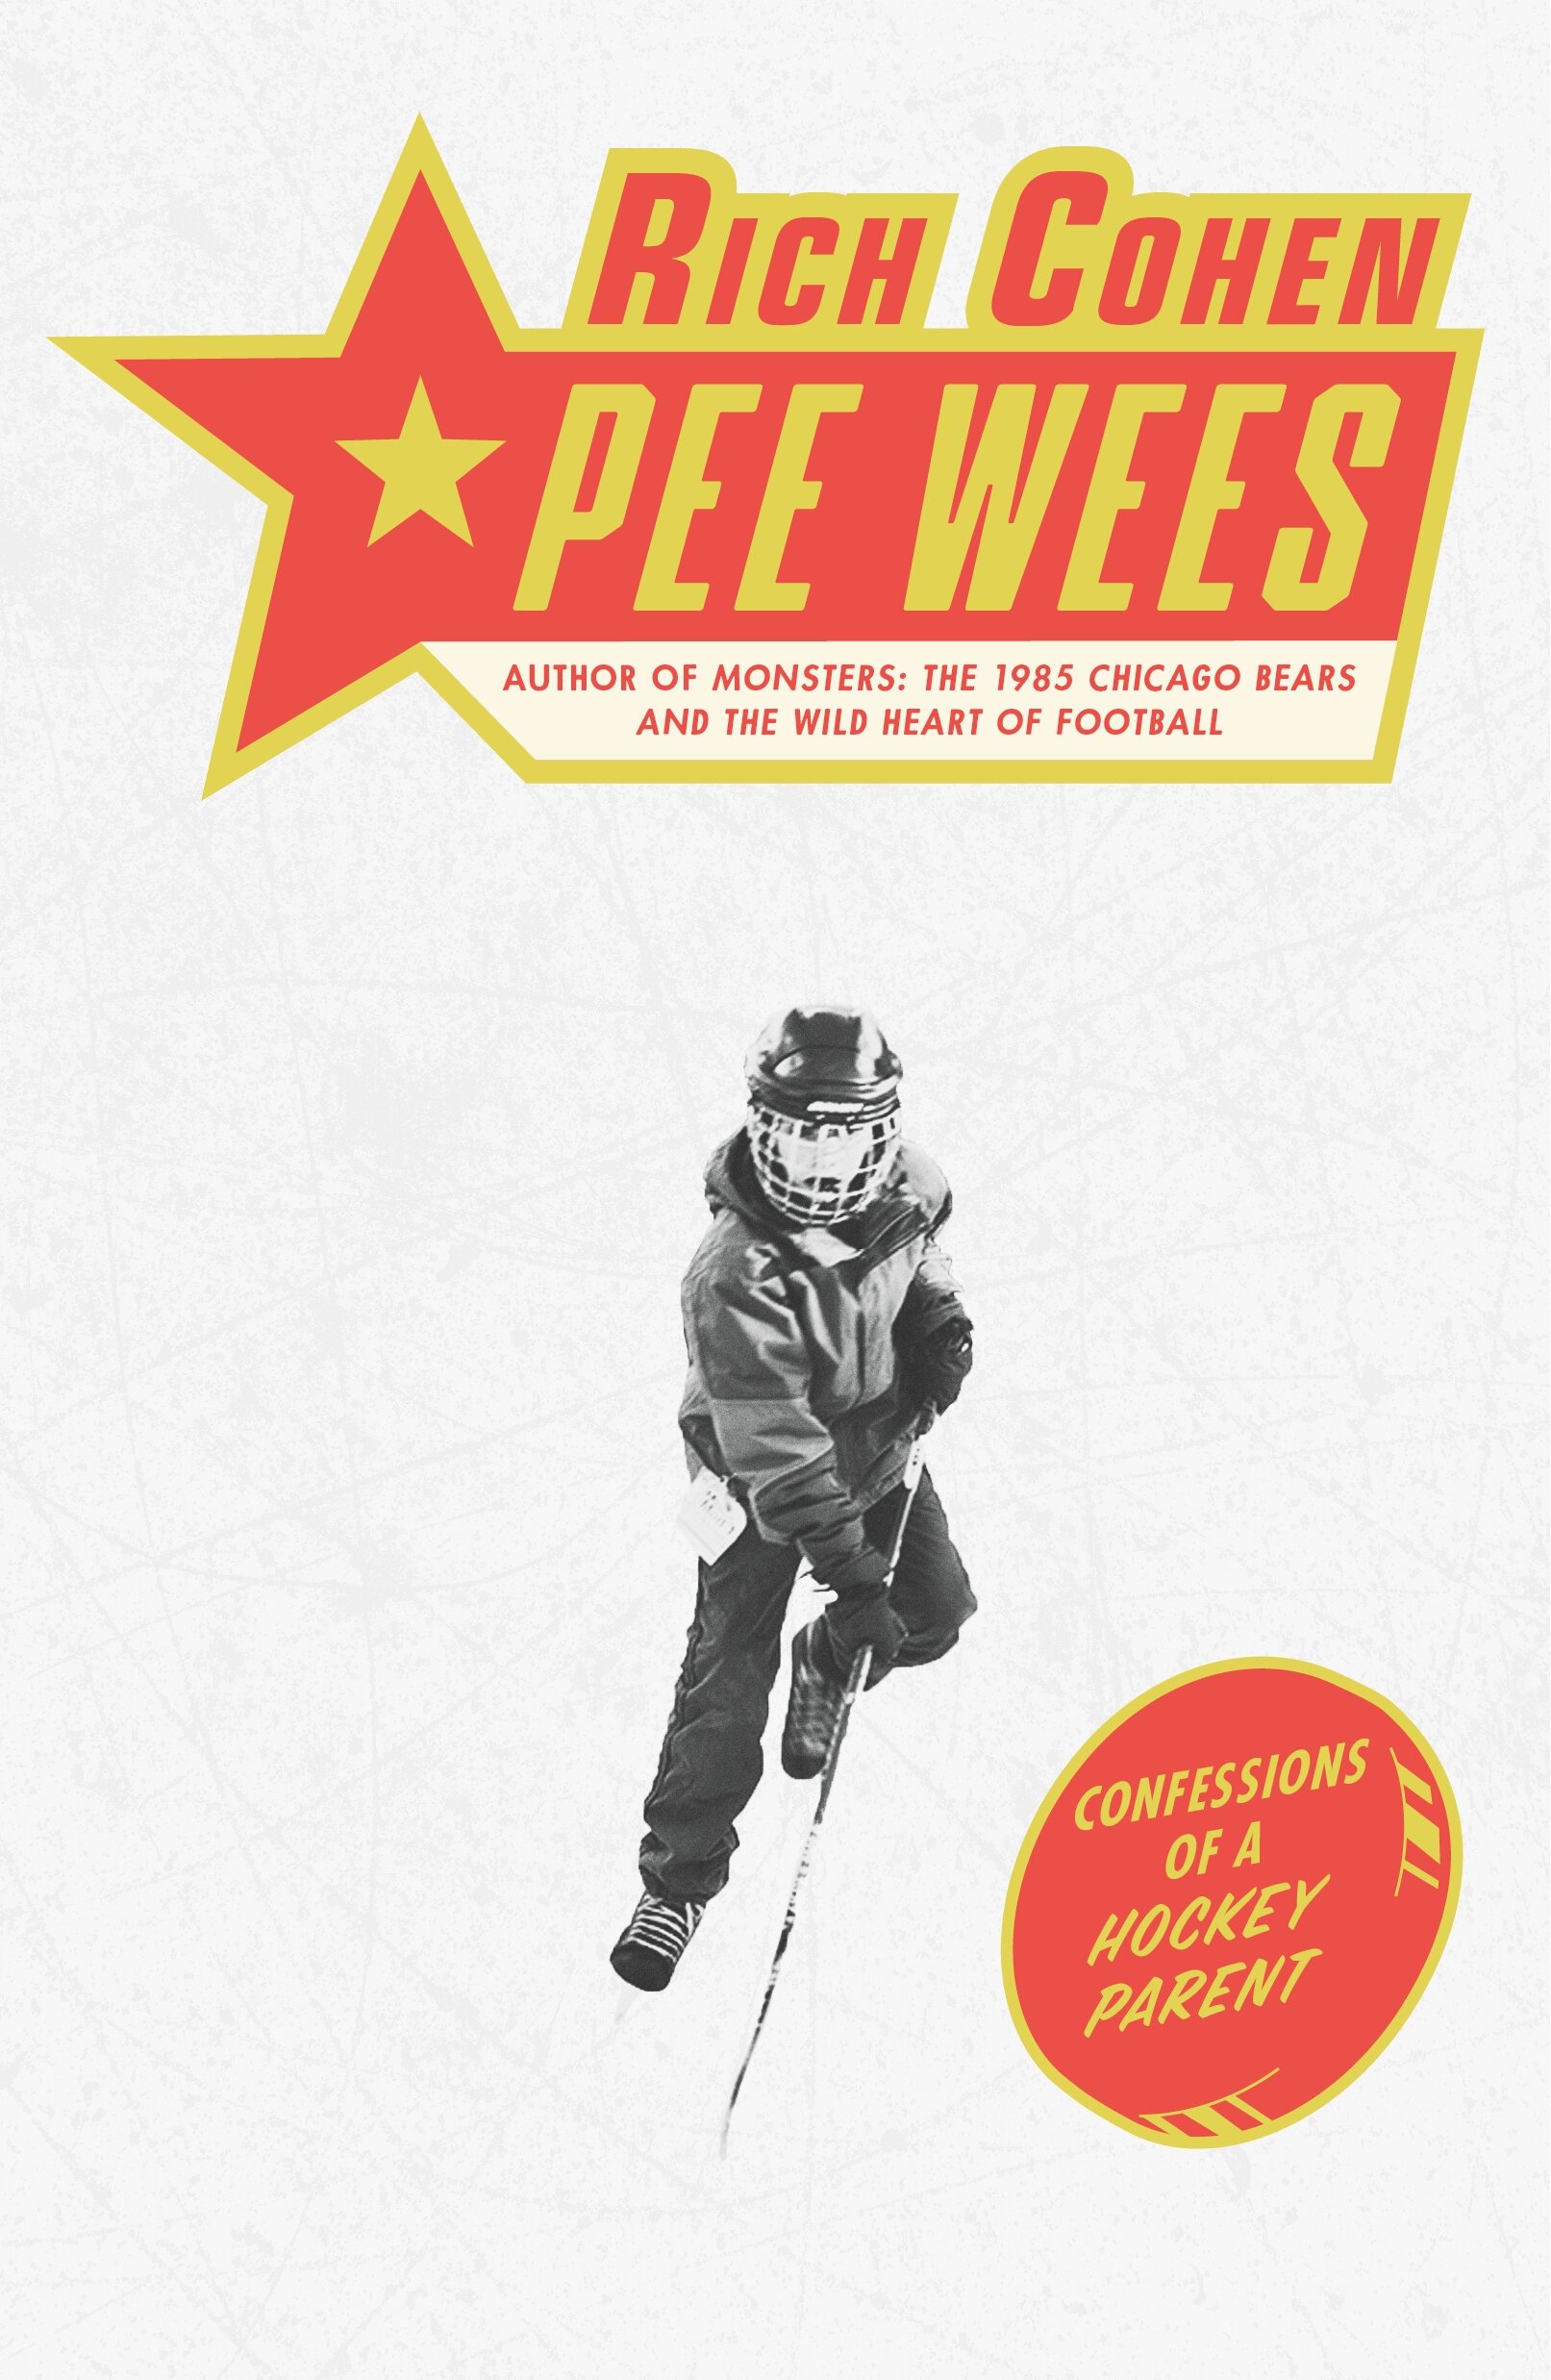 Pee Wees.jpg